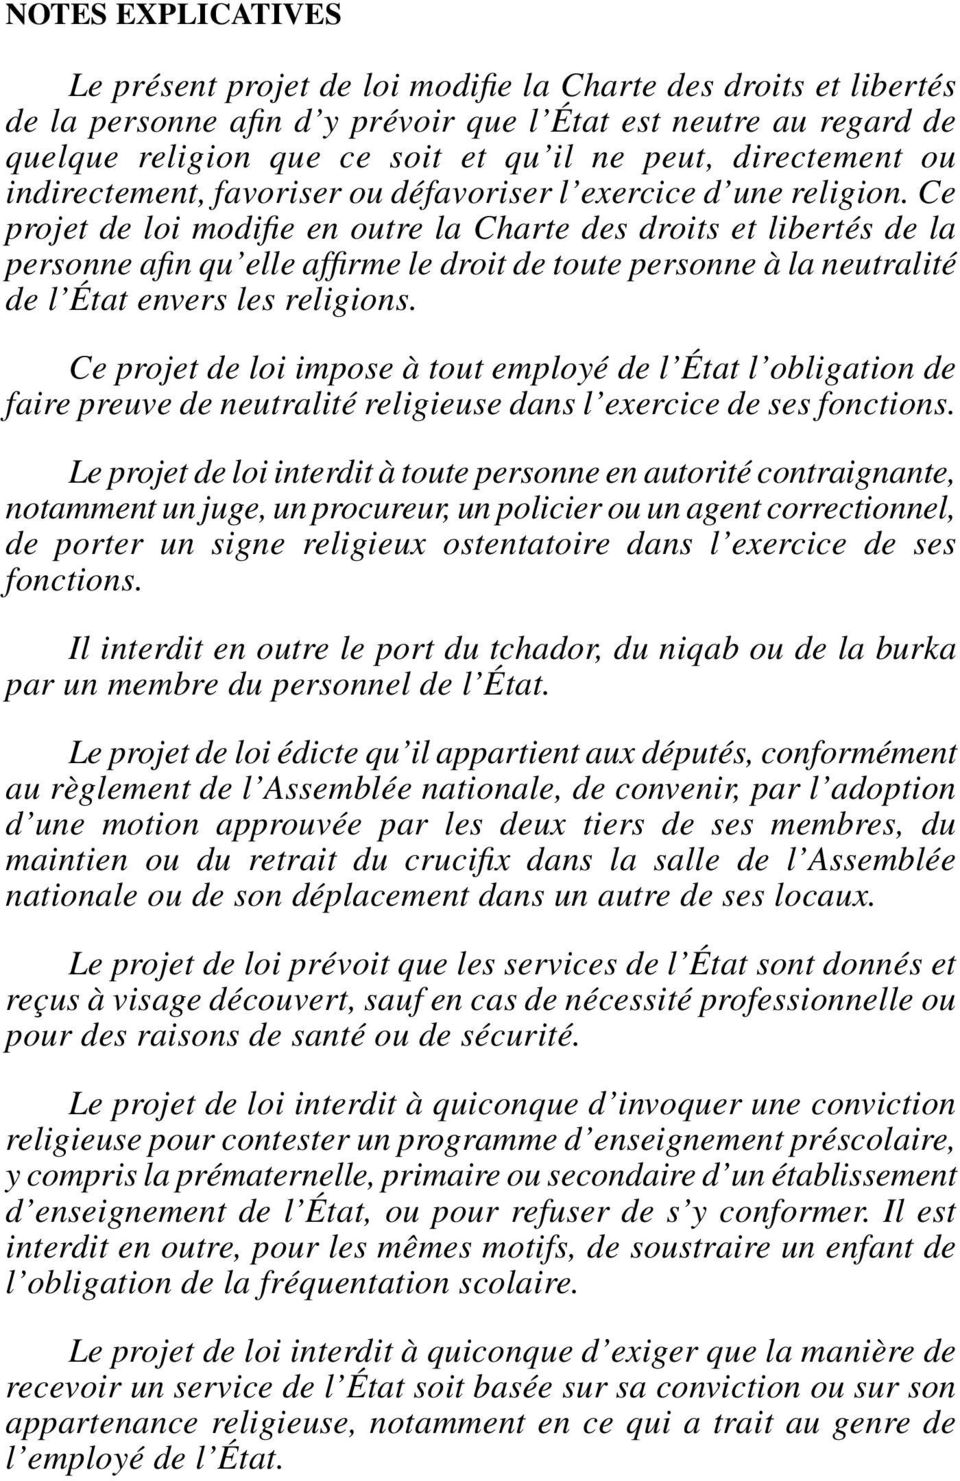 Ce projet de loi modifie en outre la Charte des droits et libertés de la personne afin qu elle affirme le droit de toute personne à la neutralité de l État envers les religions.